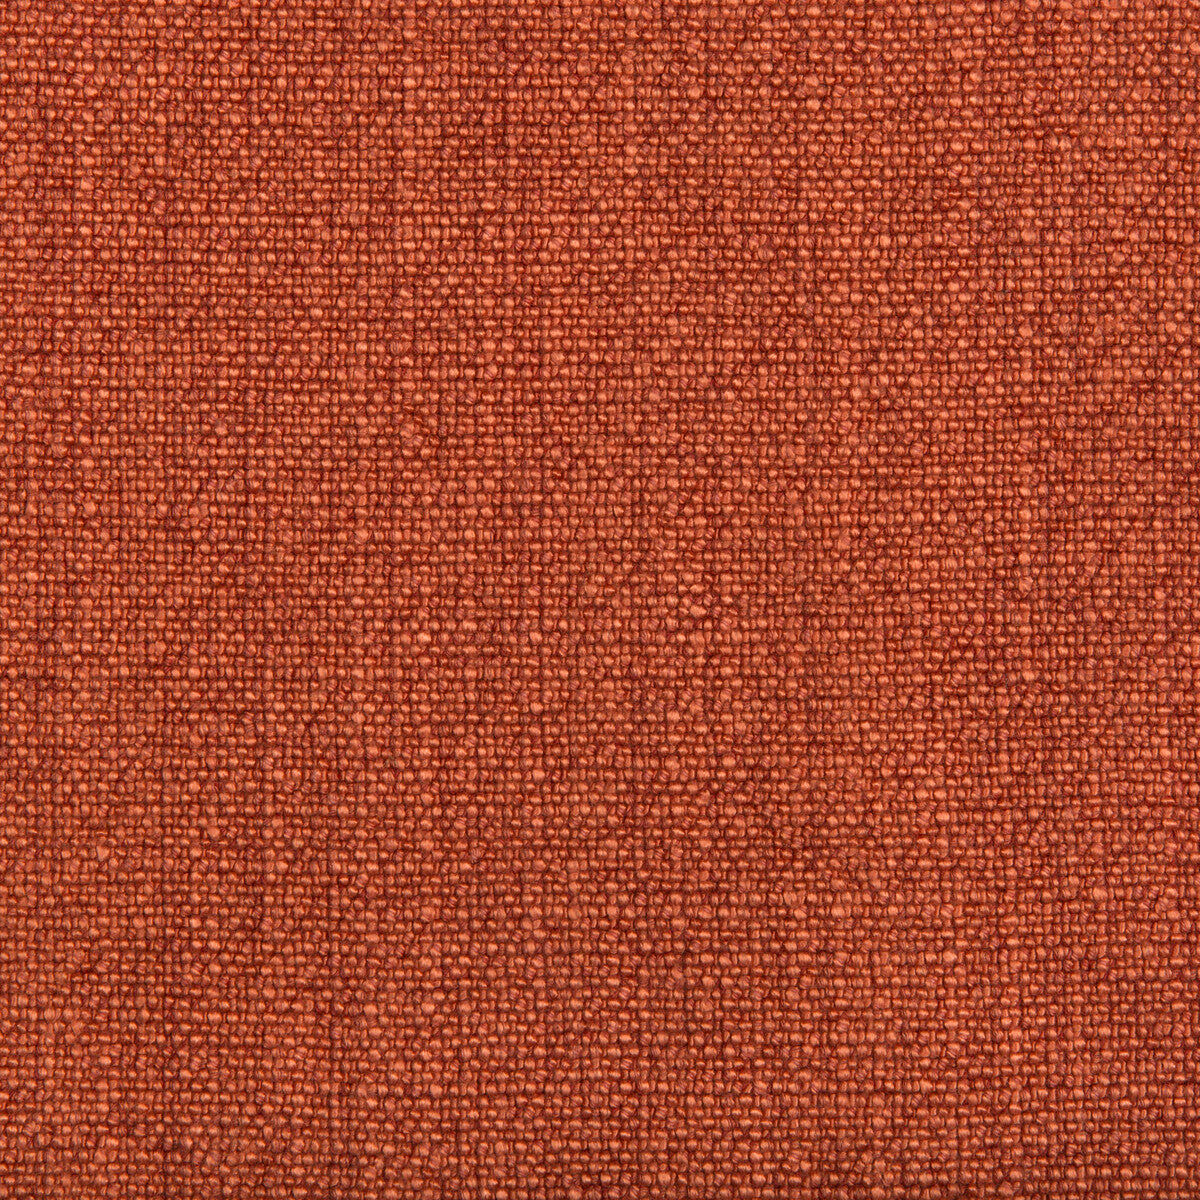 Kravet Basics fabric in 35189-12 color - pattern 35189.12.0 - by Kravet Basics